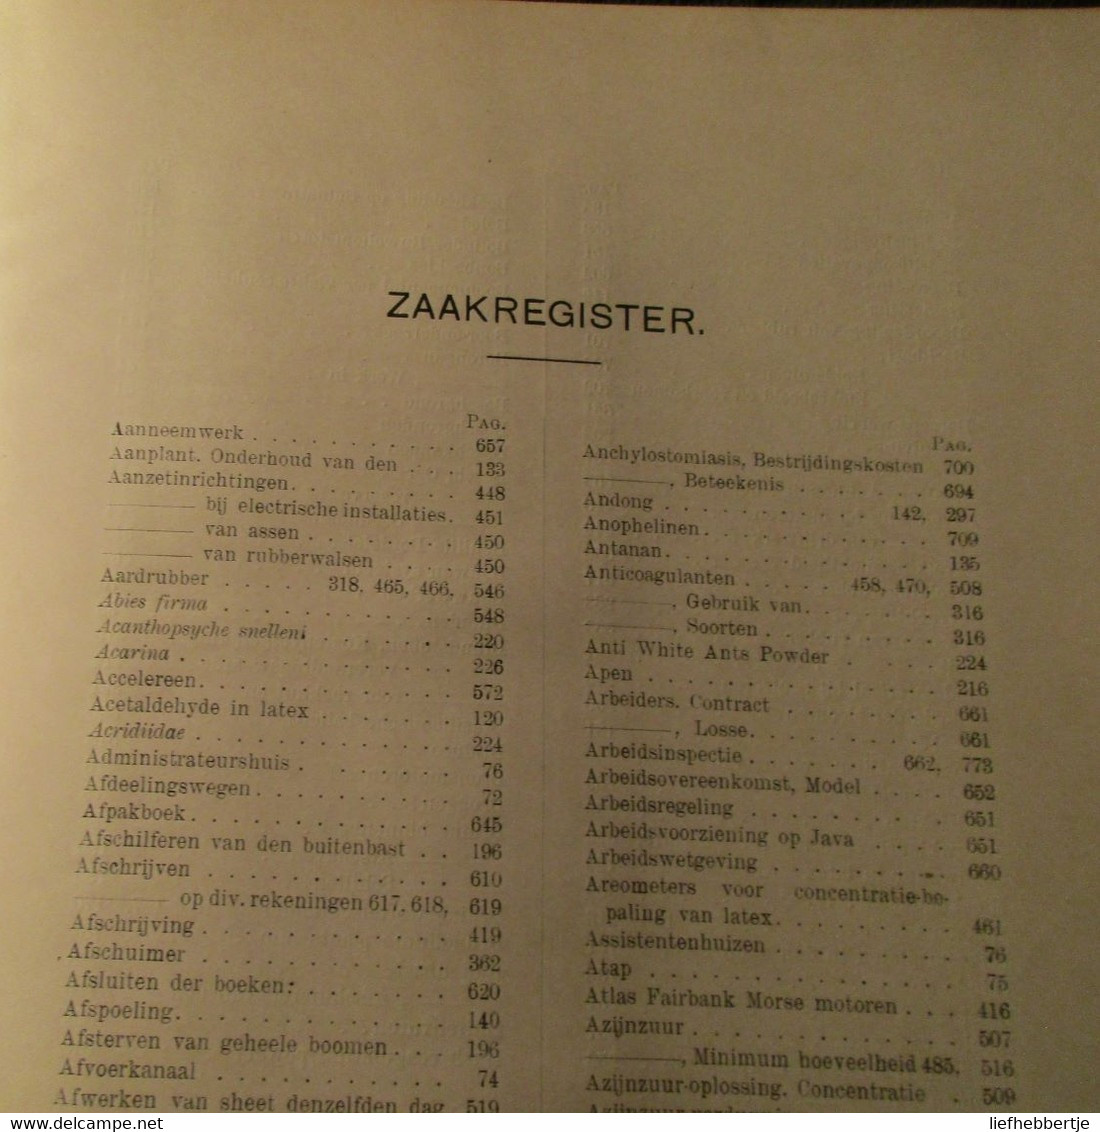 Handboek voor de rubbercultuur in Nederlands Indië - rubber - kolonie  -  1921 - red. door Swart en Rutgers